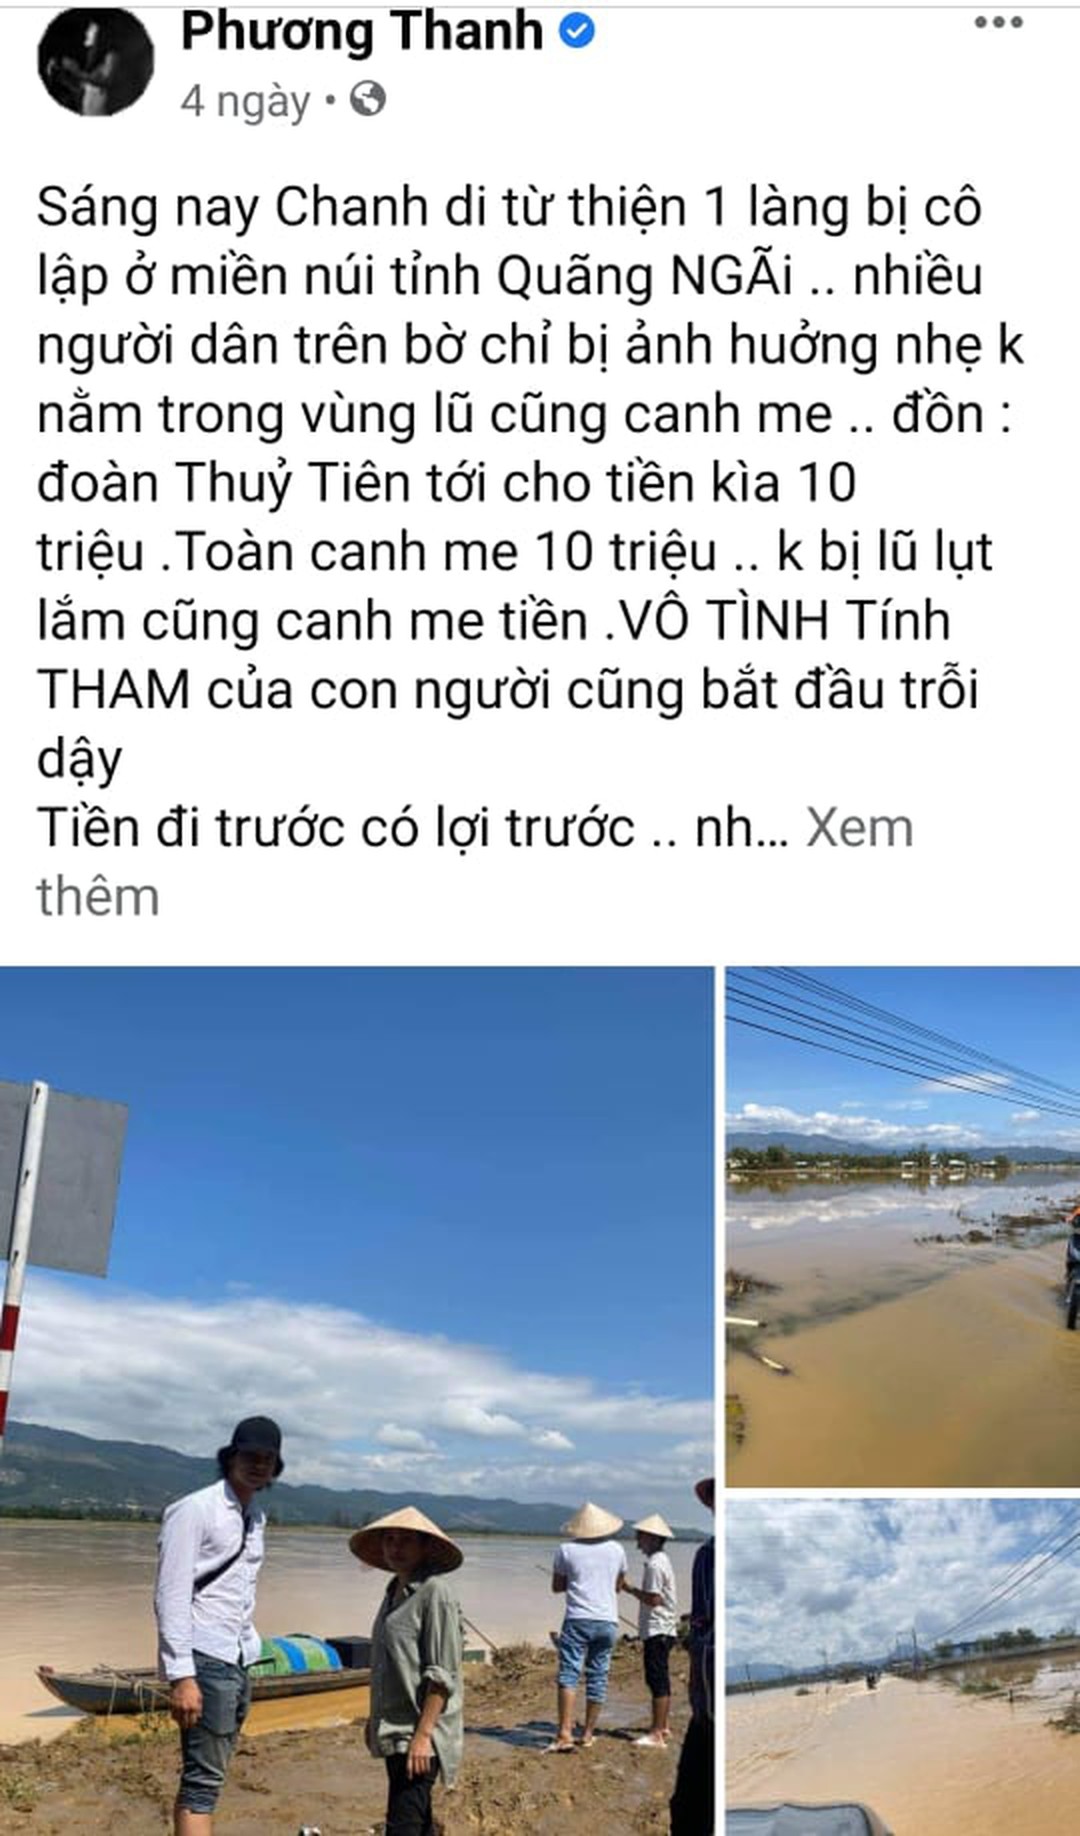 Phương Thanh chia sẻ trên trang cá nhân Facebook